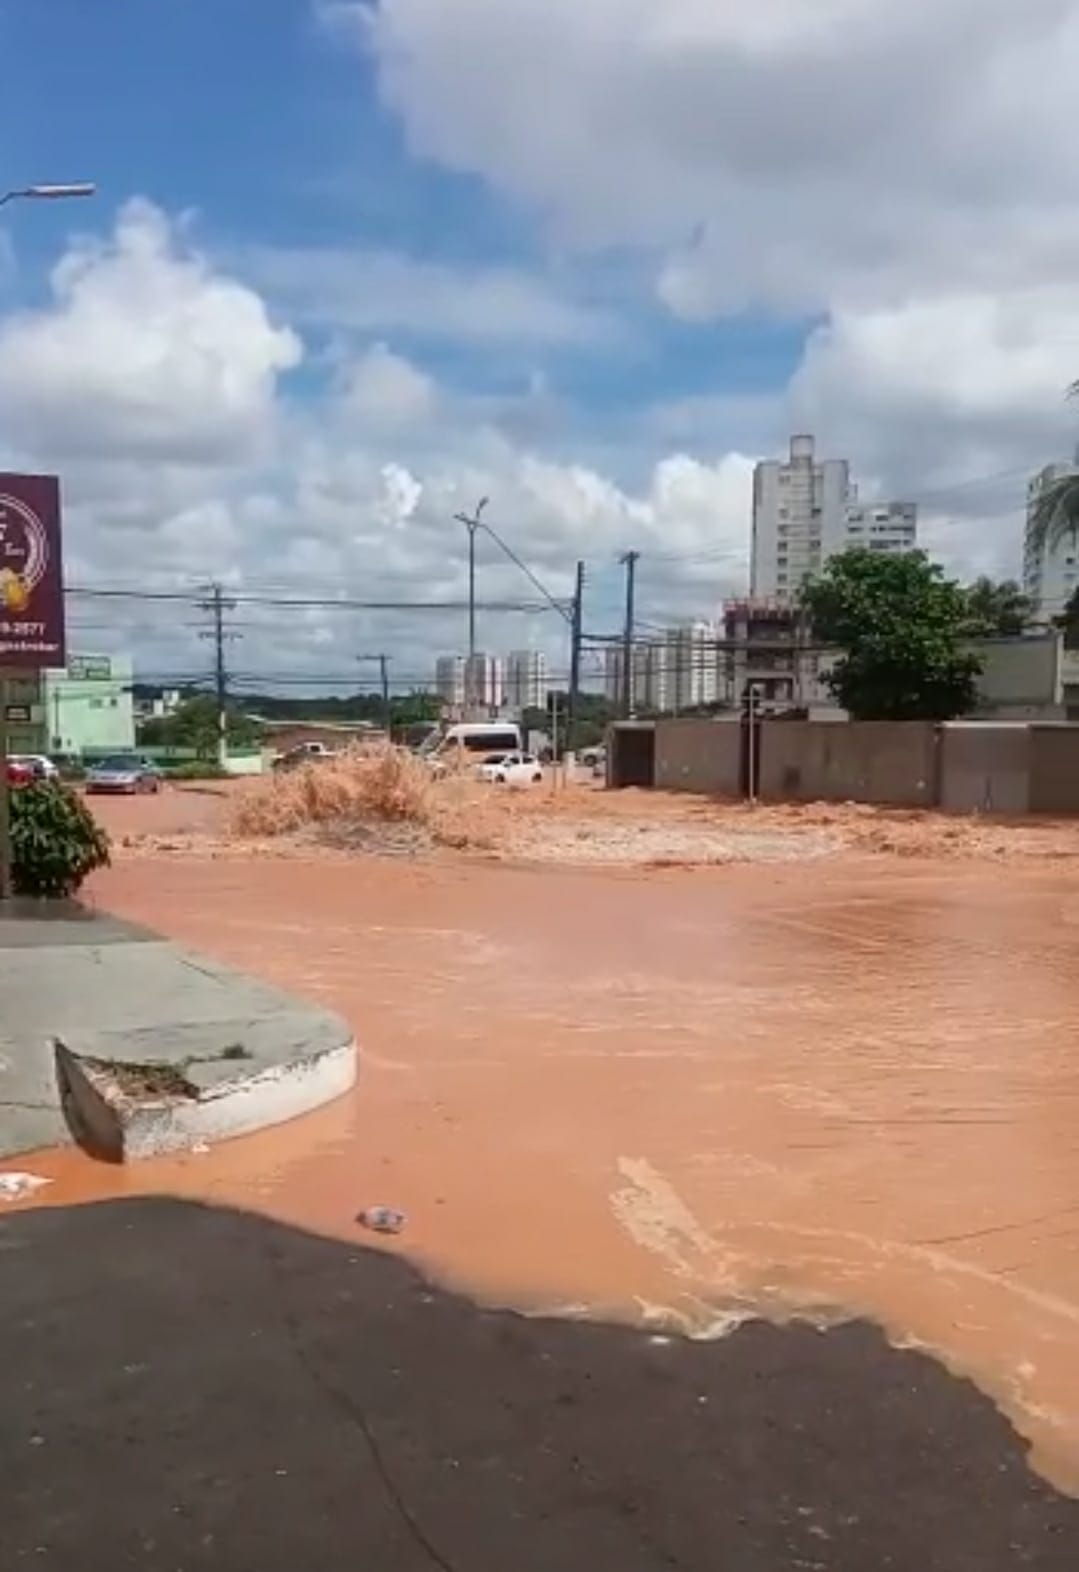 Bairros afetados por rompimento de tubulação terão retorno de água gradativo neste sábado em Manaus